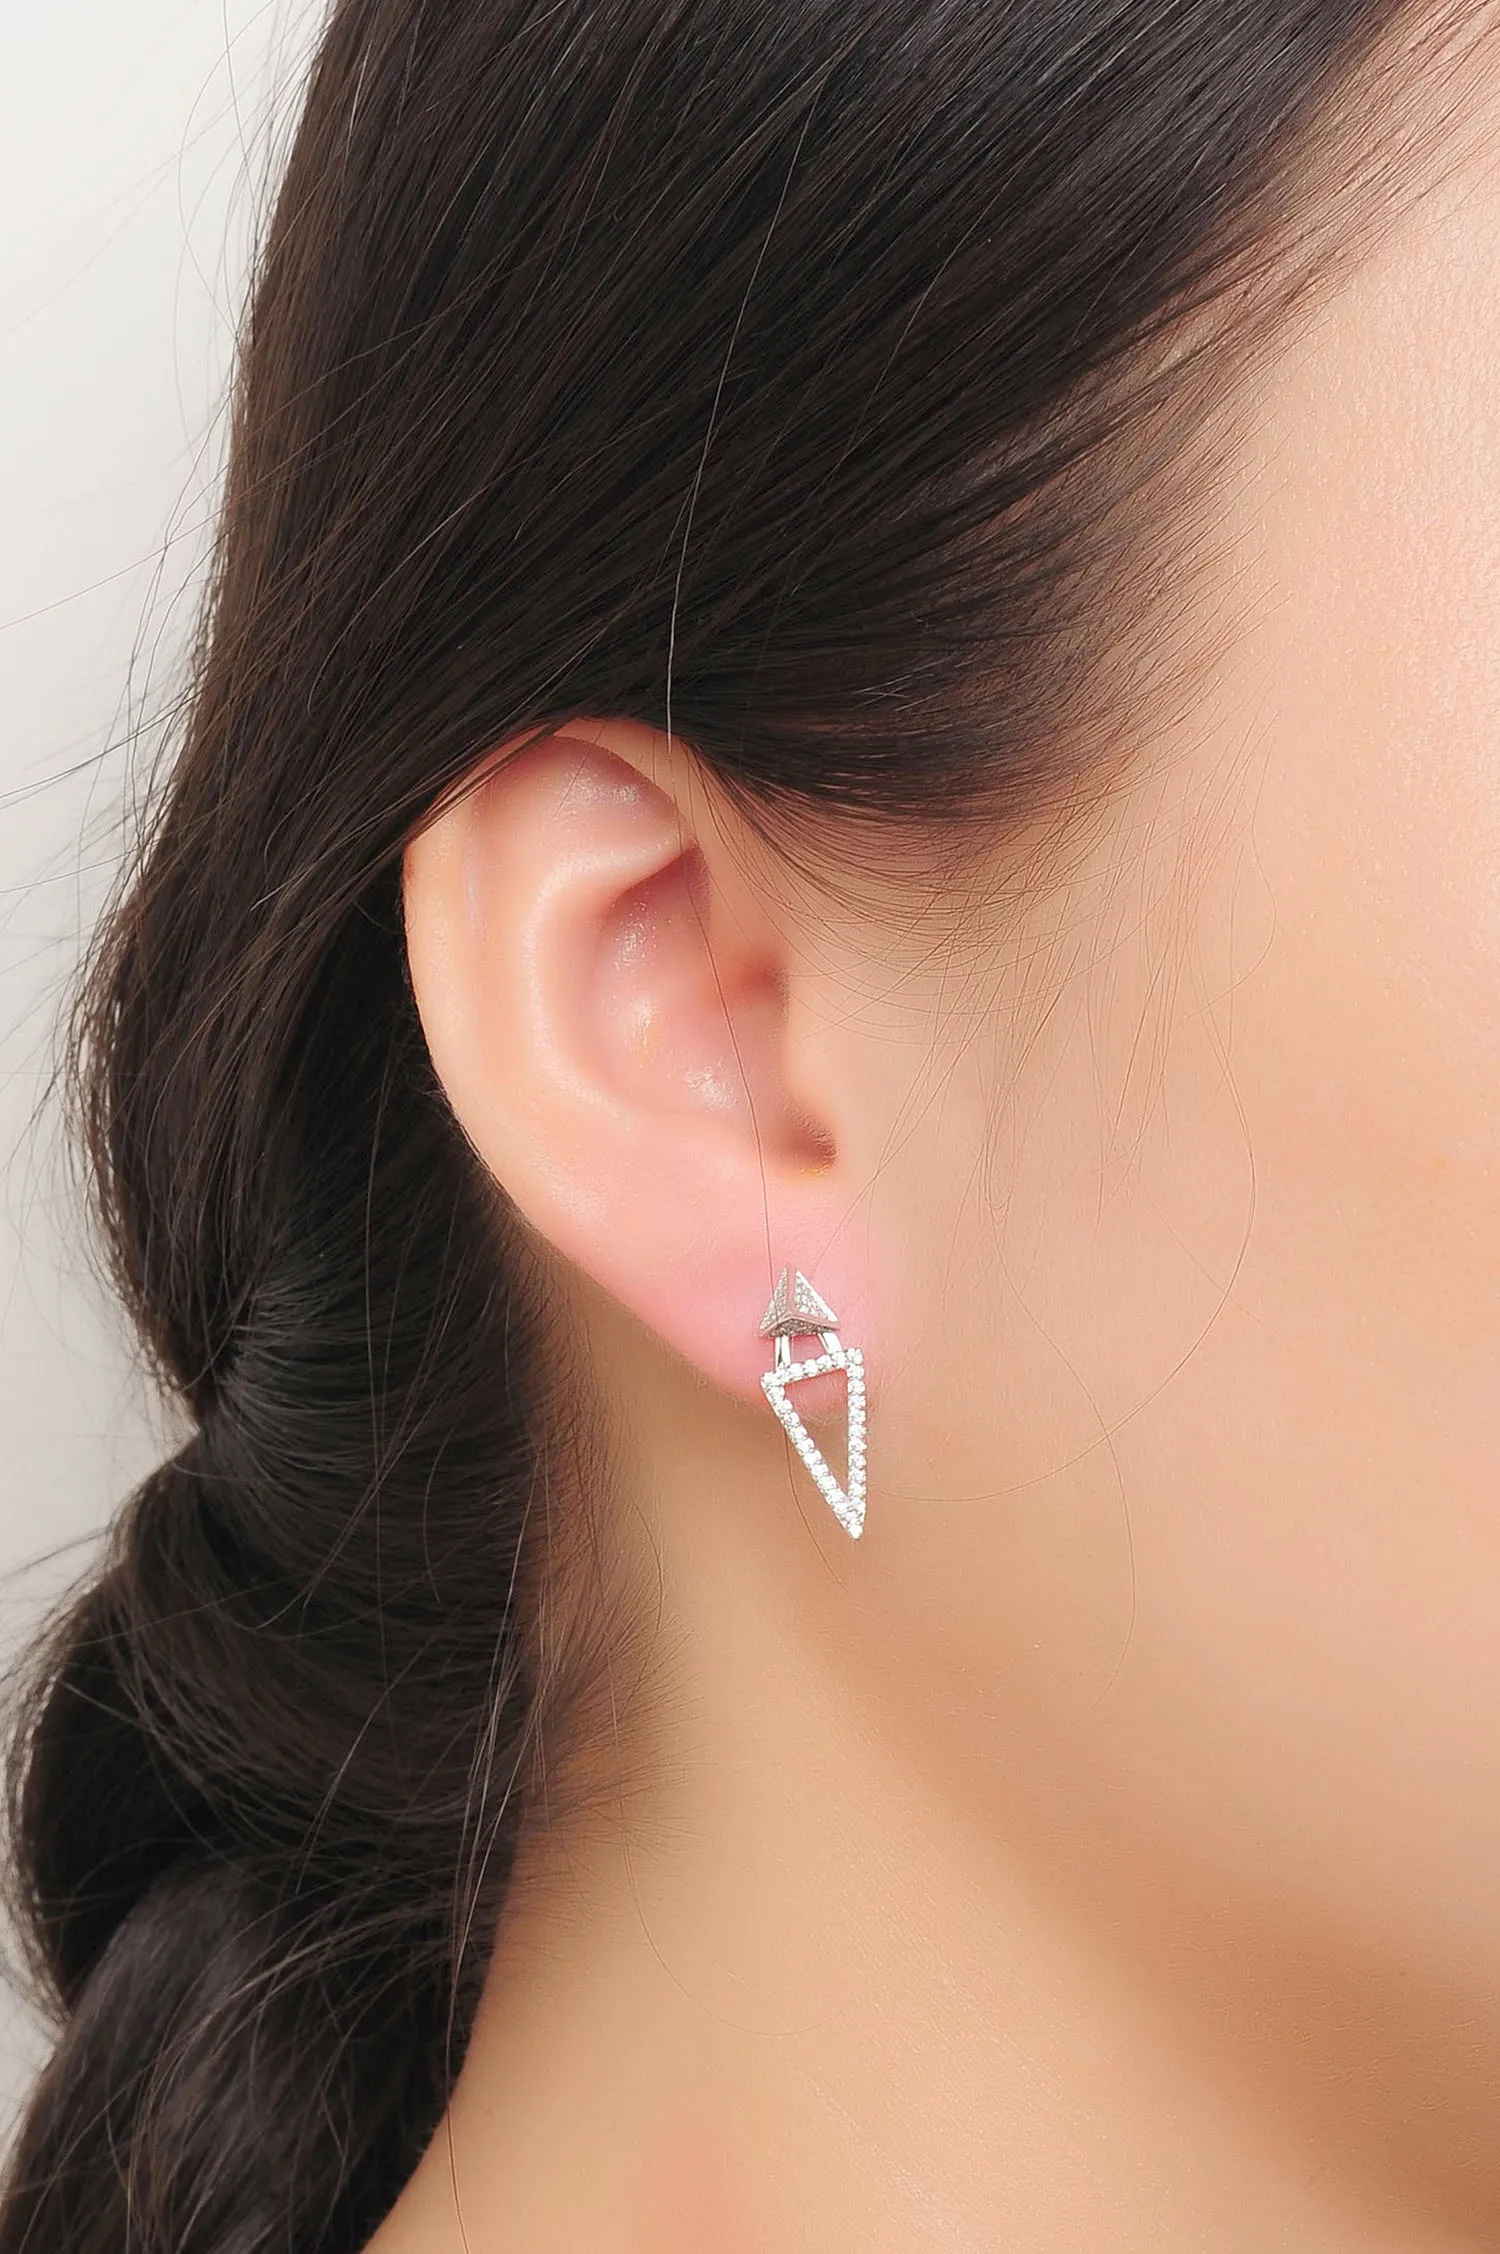 Luxury Jewelry Earring 925 Sterling Silver Women Fashionable CZ Triangle Stud Earring(图6)